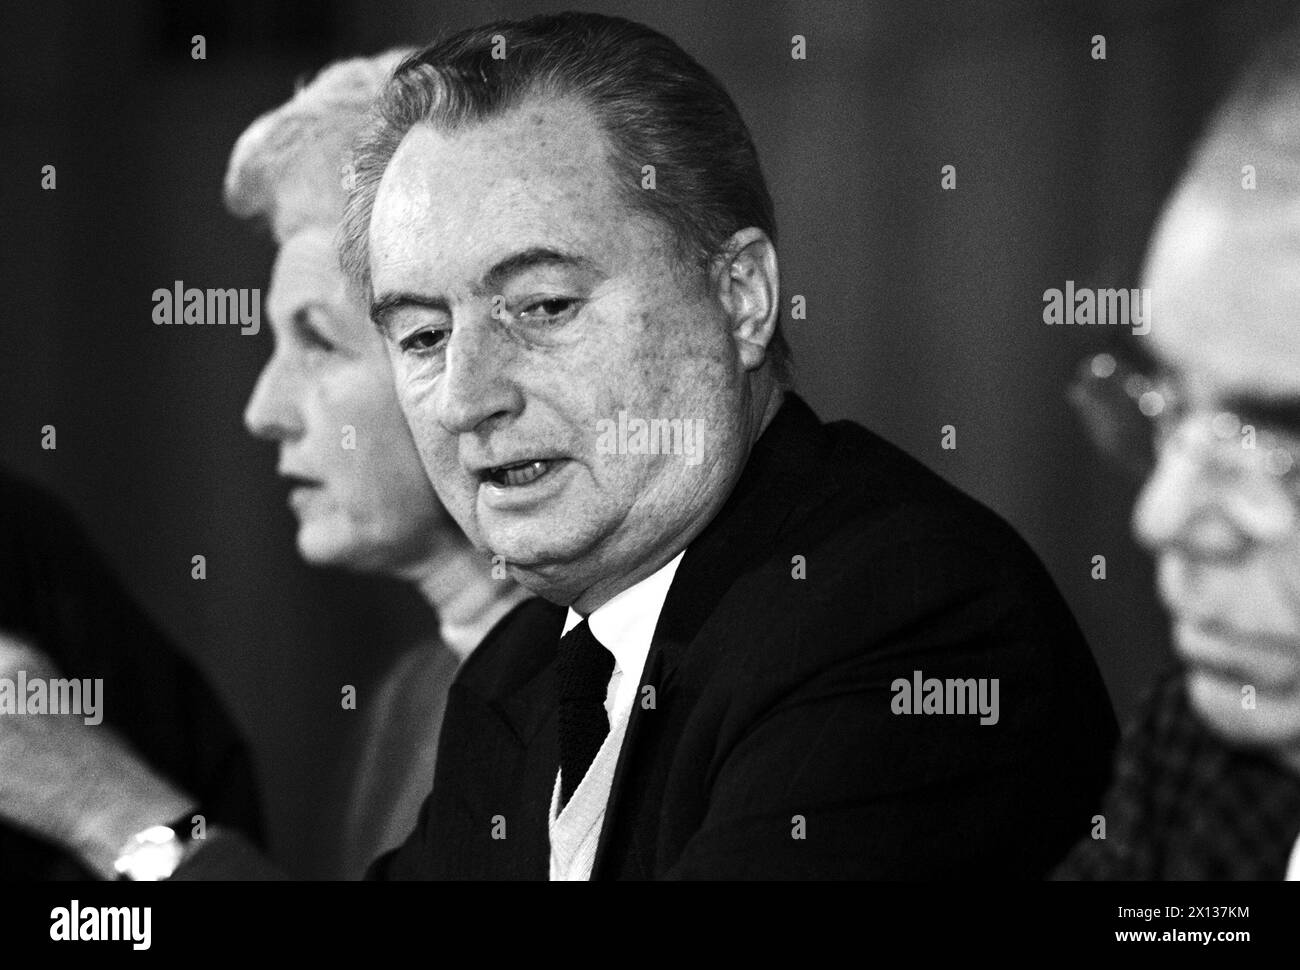 Wien am 8. Februar 1991: Pressekonferenz der Aktionseinheit für eine friedliche Lösung im Nahen Osten mit Erwin Lanc. - 19910208 PD0012 - Rechteinfo: Rechte verwaltet (RM) Stockfoto